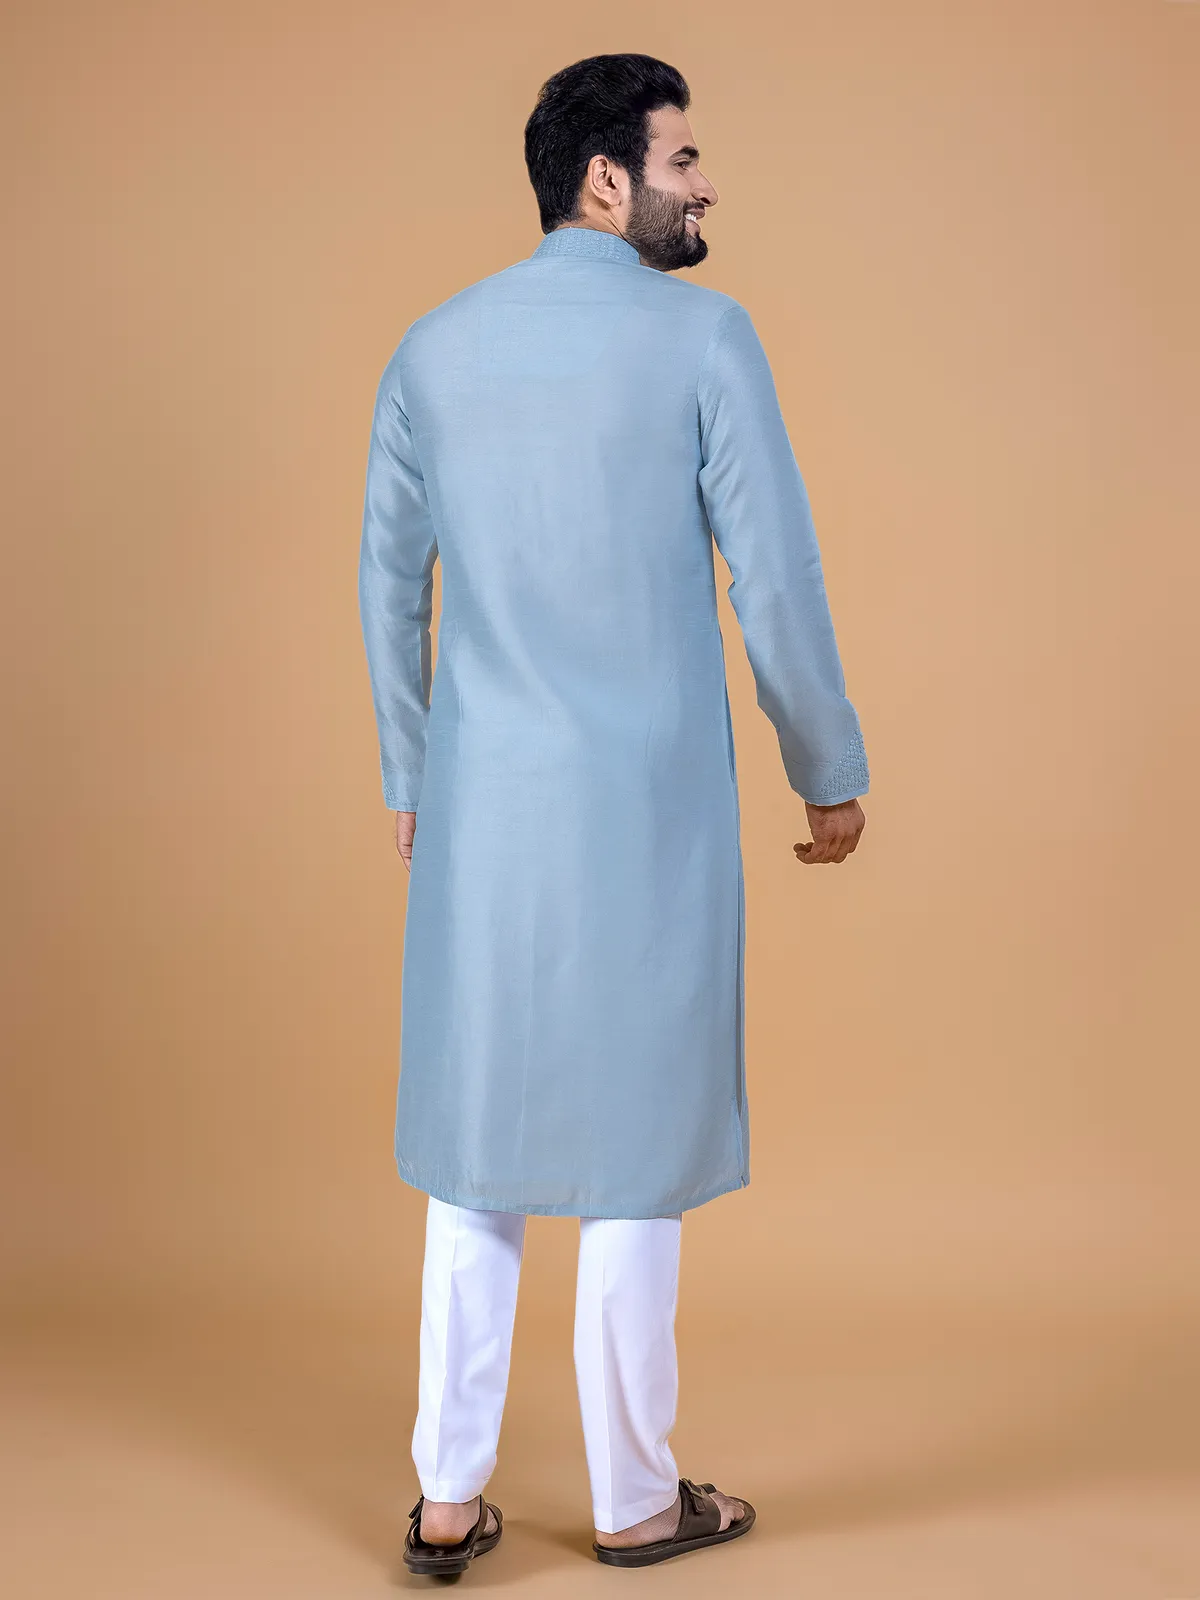 Classic sky blue silk kurta suit for festive